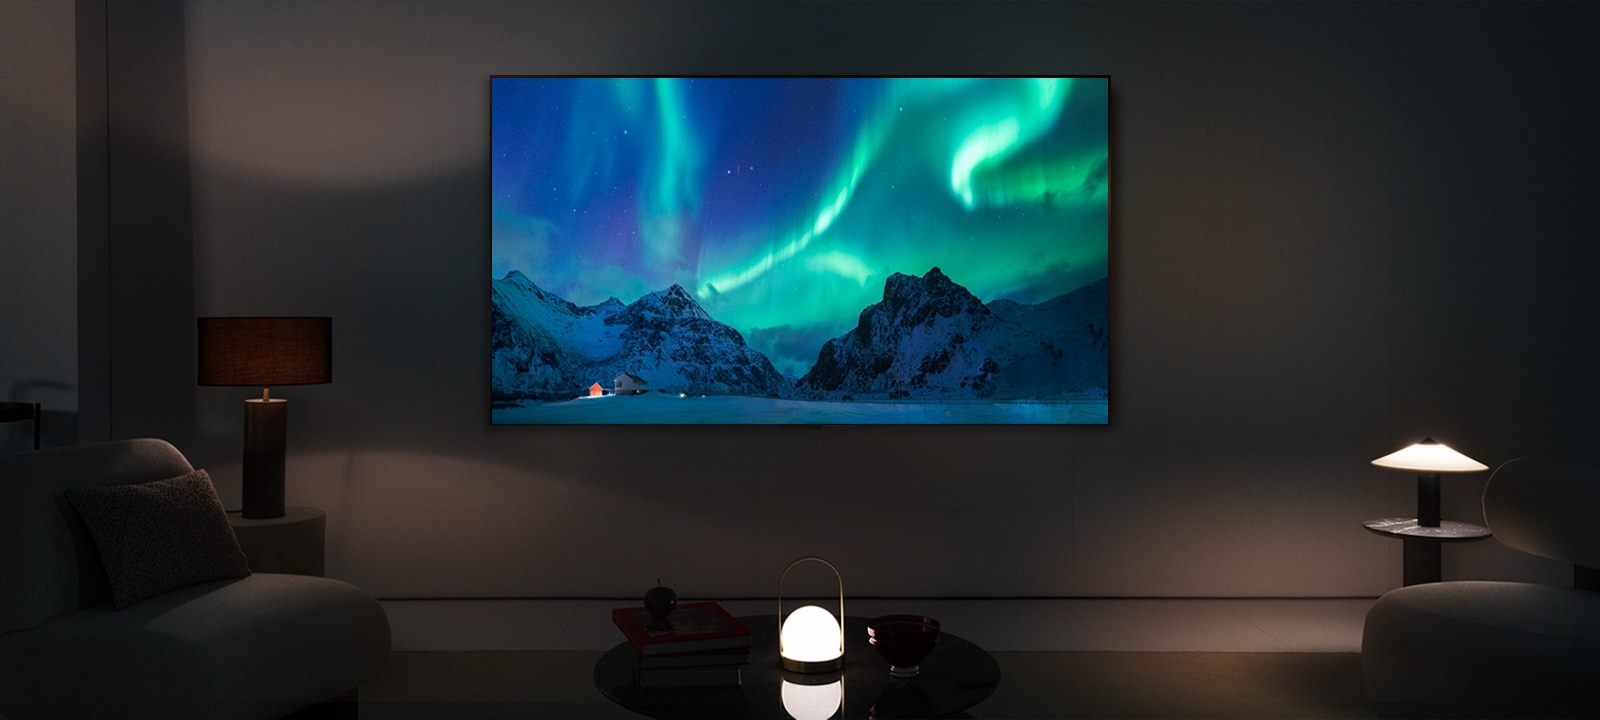 夜里现代化客厅里的 LG OLED TV 和 LG 条形音箱。屏幕以绝佳的亮度显示北极光图像。